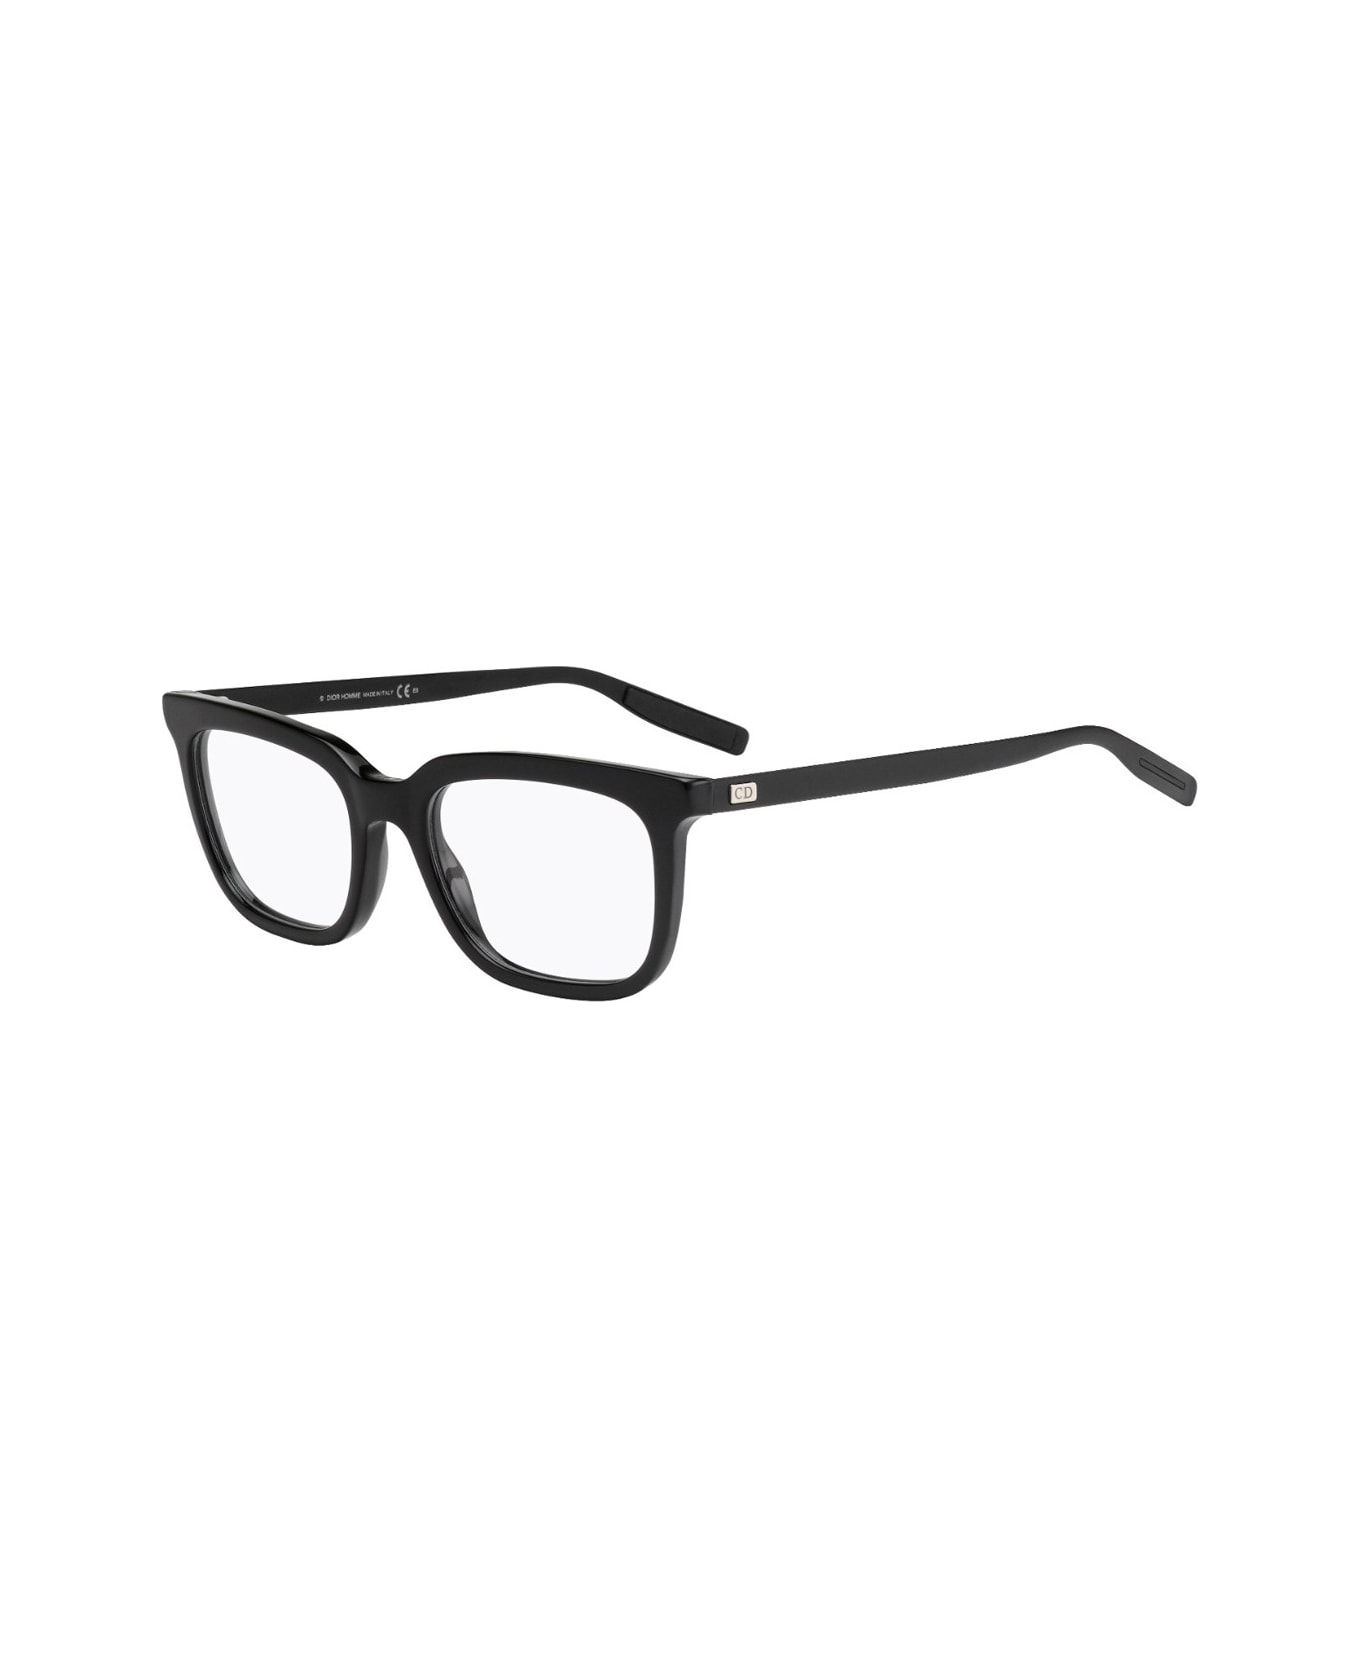 Dior Eyewear Blacktie 216 Glasses - Nero